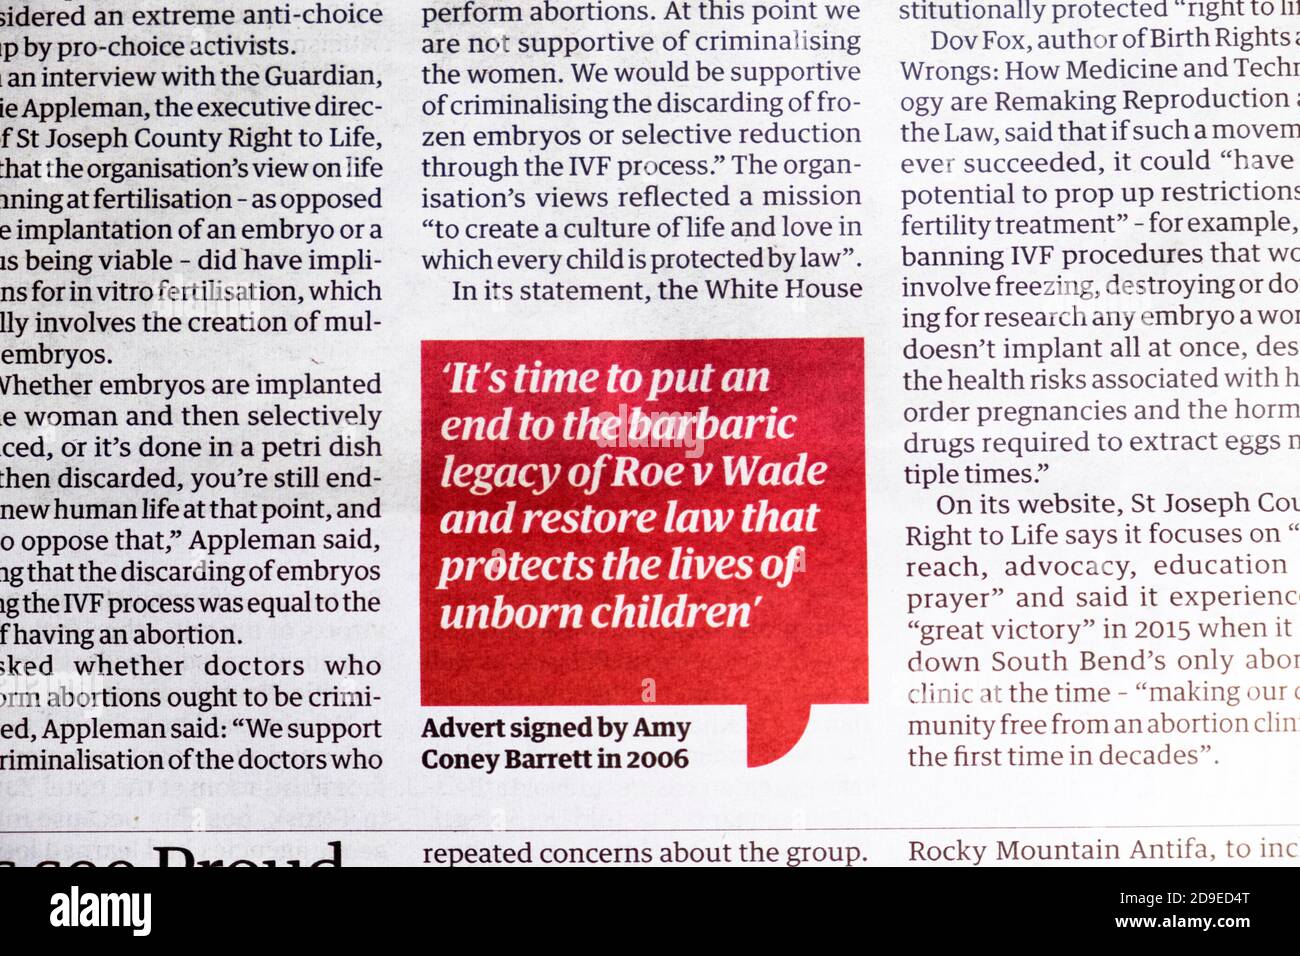 Amy Coney Barrett Anzeige 2006 "Es ist Zeit, eine zu setzen Ende des barbarischen Vermächtnisses von Roe V Wade & Wiederherstellung von Gesetzen, die das Leben ungeborener Kinder schützen Stockfoto